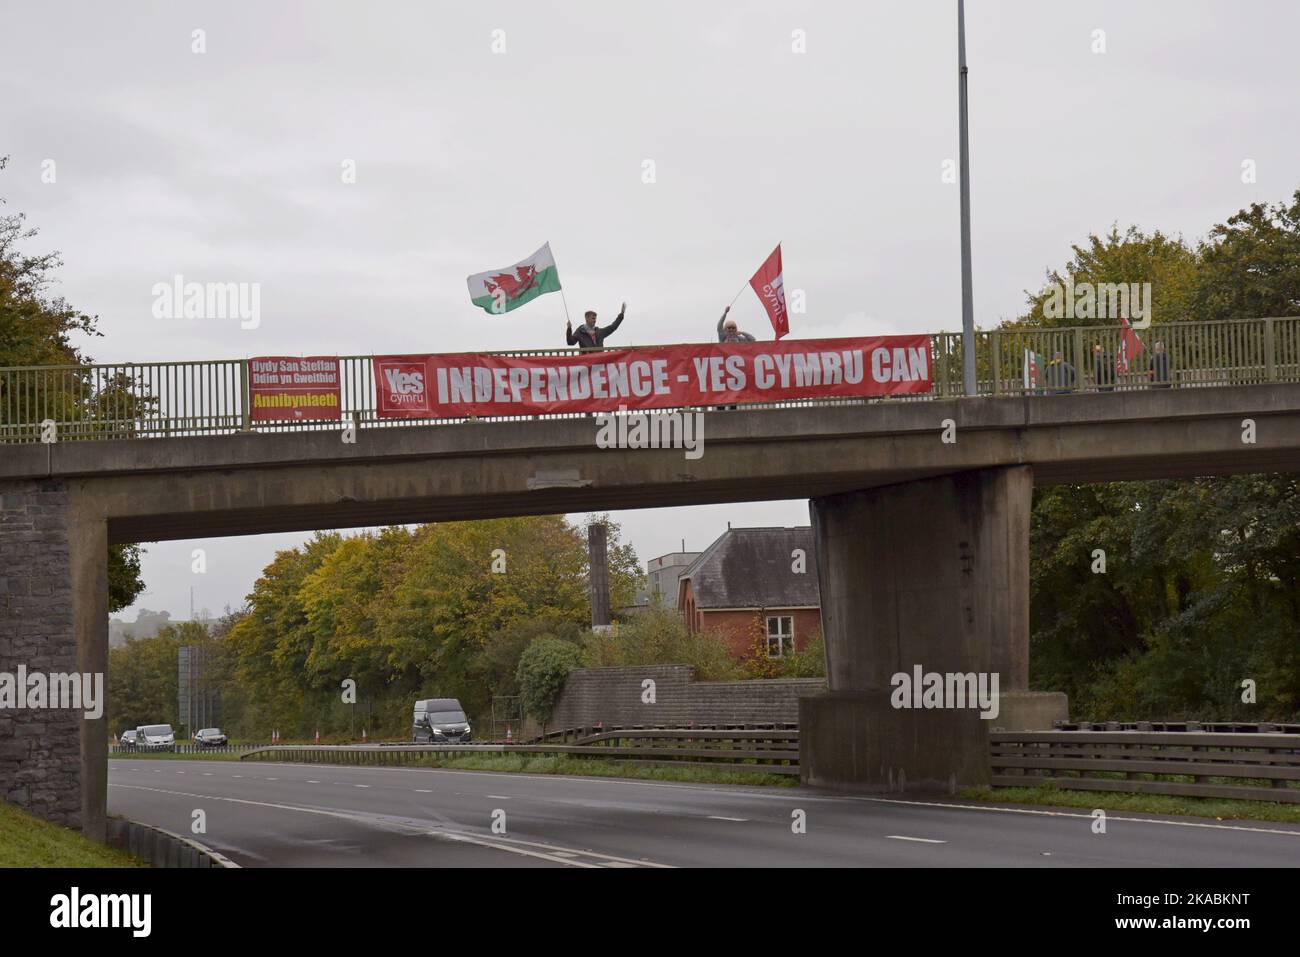 Wahlkämpfer für eine walisische Unabhängigkeit Ja stimmt mit Transparenten und walisischen Flaggen auf der Straßenbrücke A40 in Carmarthen, Wales Stockfoto